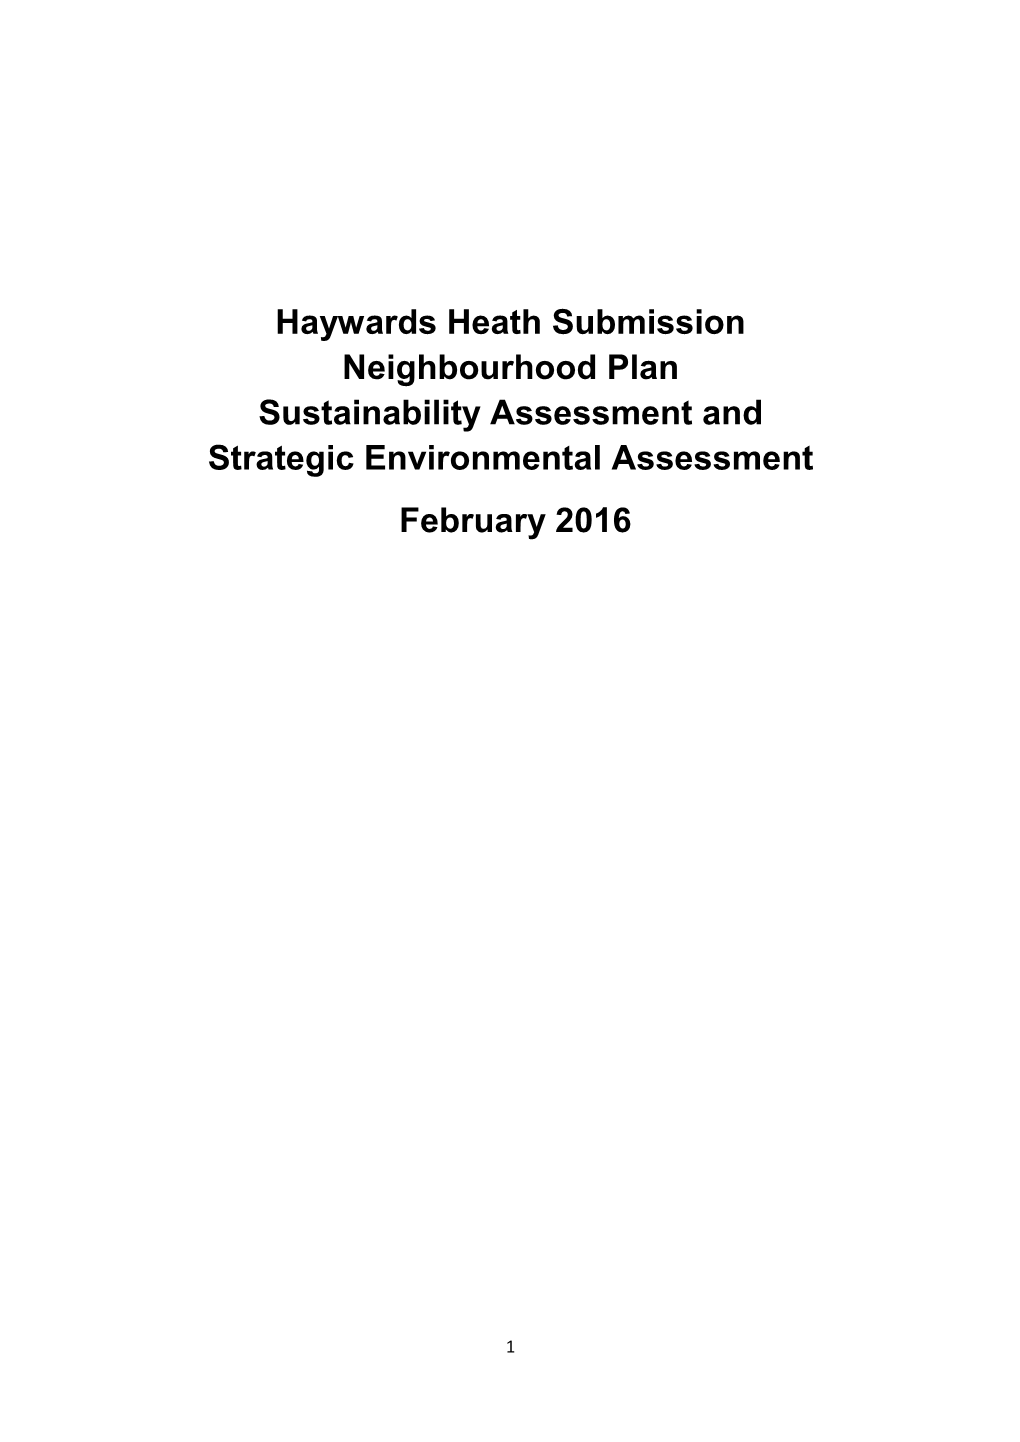 Haywards Heath Neighbourhood Plan Sustainability Appraisal